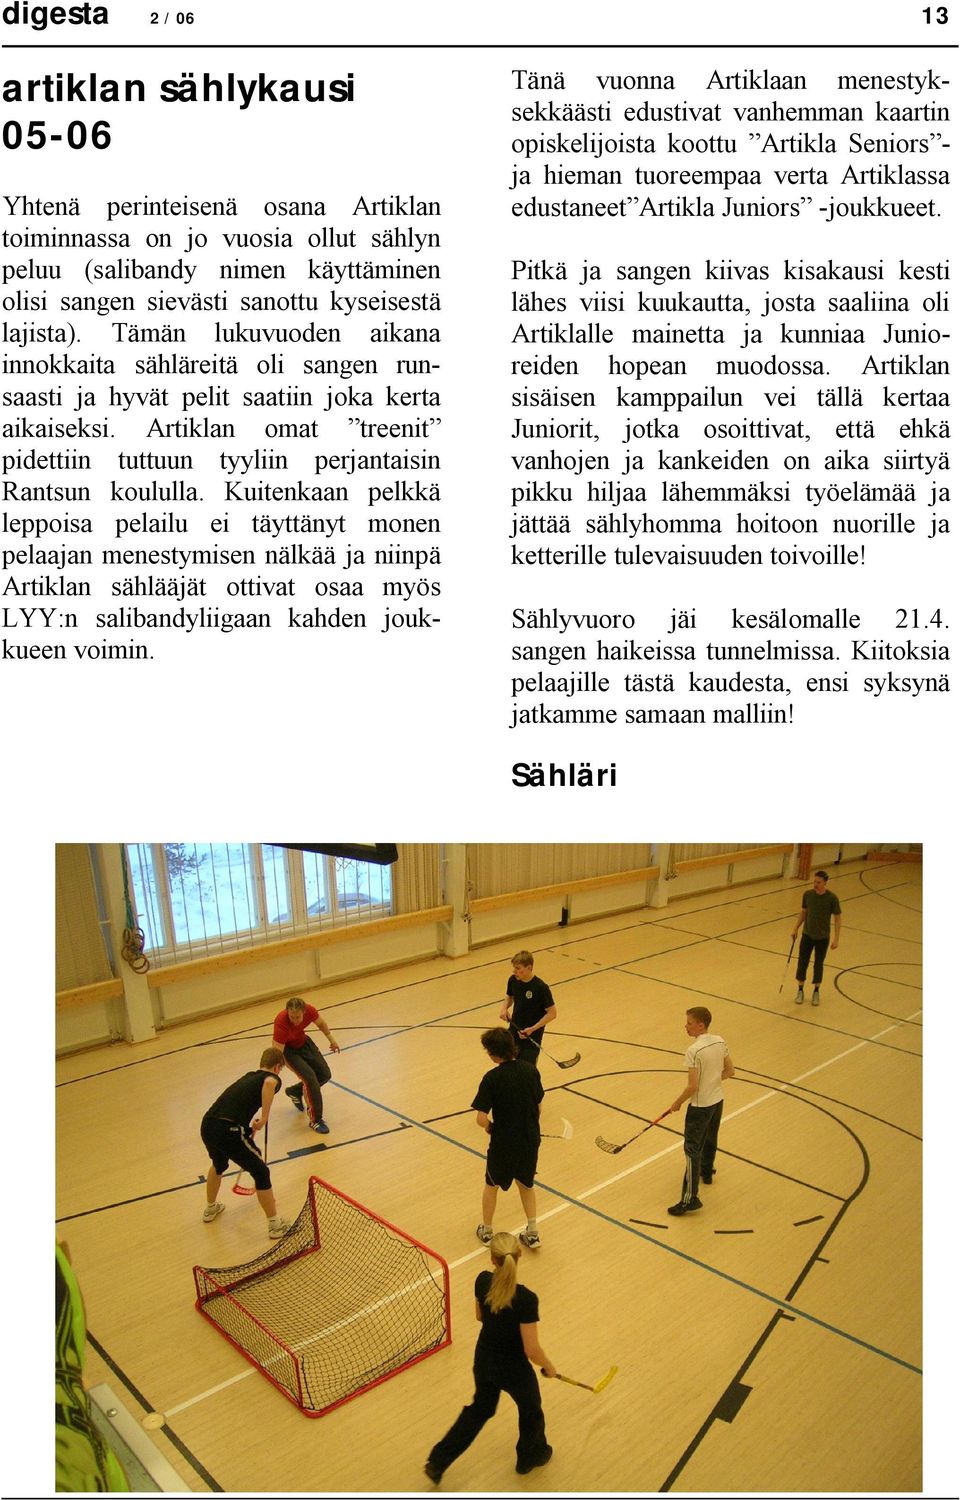 Artiklan omat treenit pidettiin tuttuun tyyliin perjantaisin Rantsun koululla.